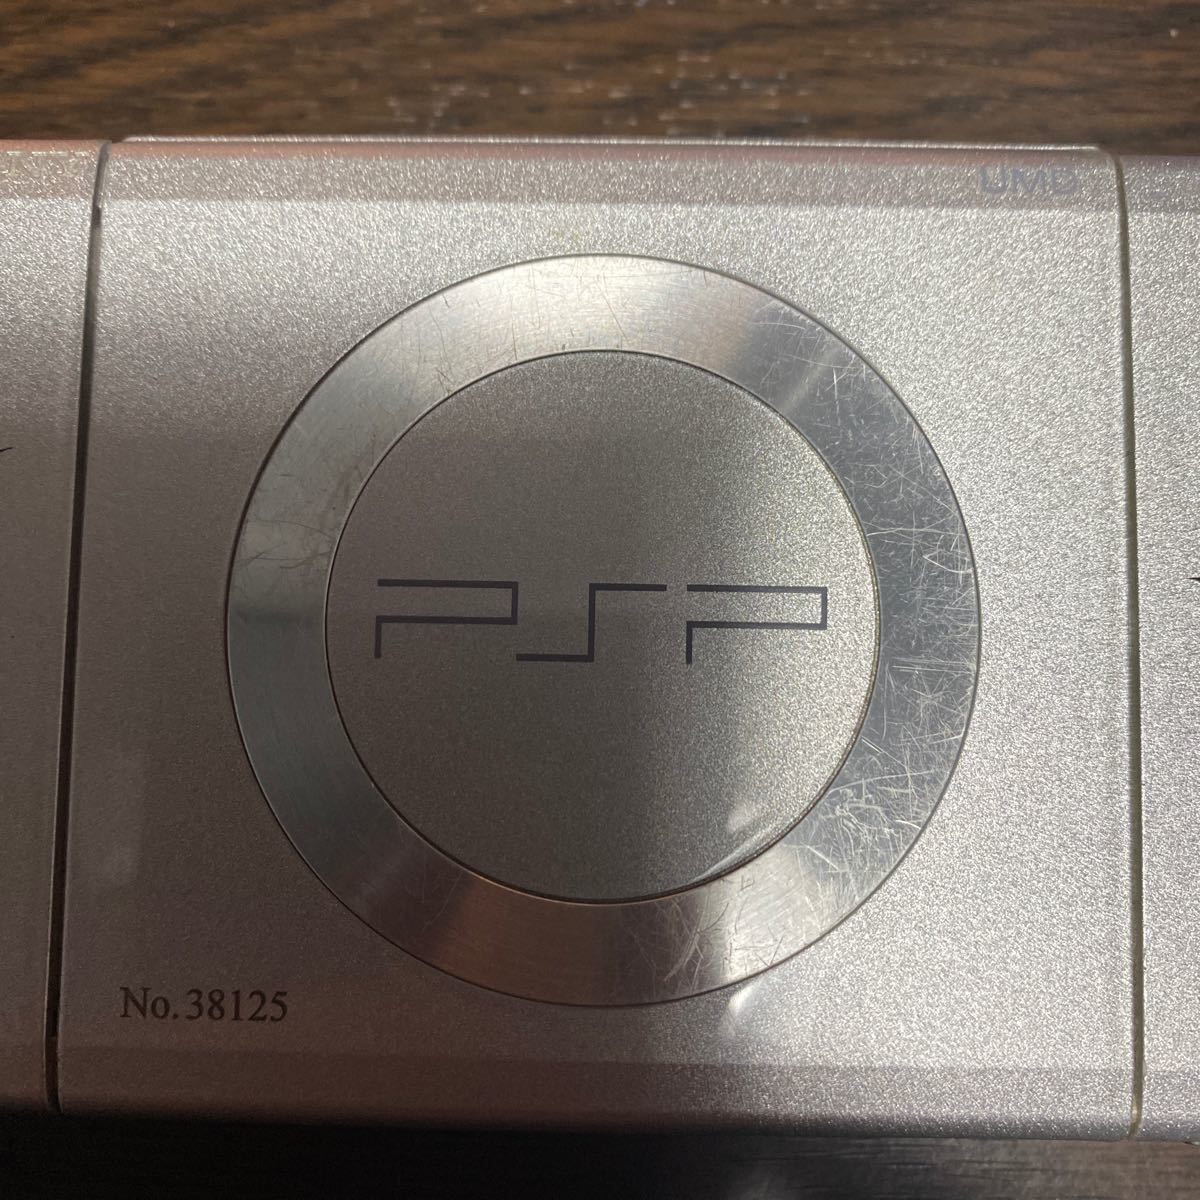 PSP-2000 ファイナルファンタジー7 10thアニバーサリーver ジャンク　起動未確認品　バッテリー付属なし